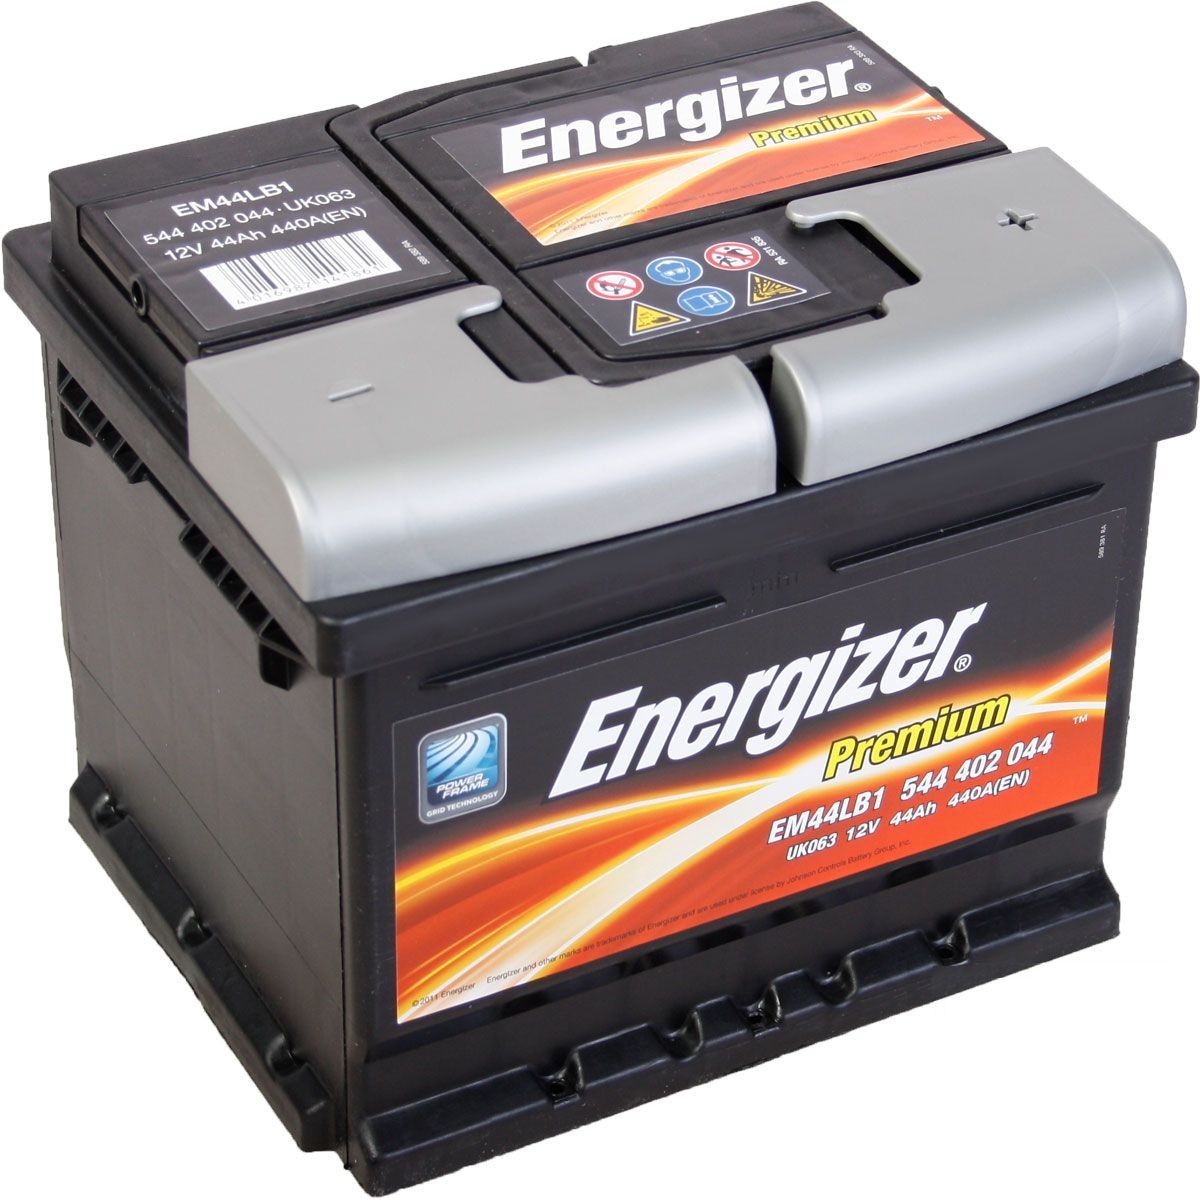 ENERGIZER EM44-LB1 Autobatterie